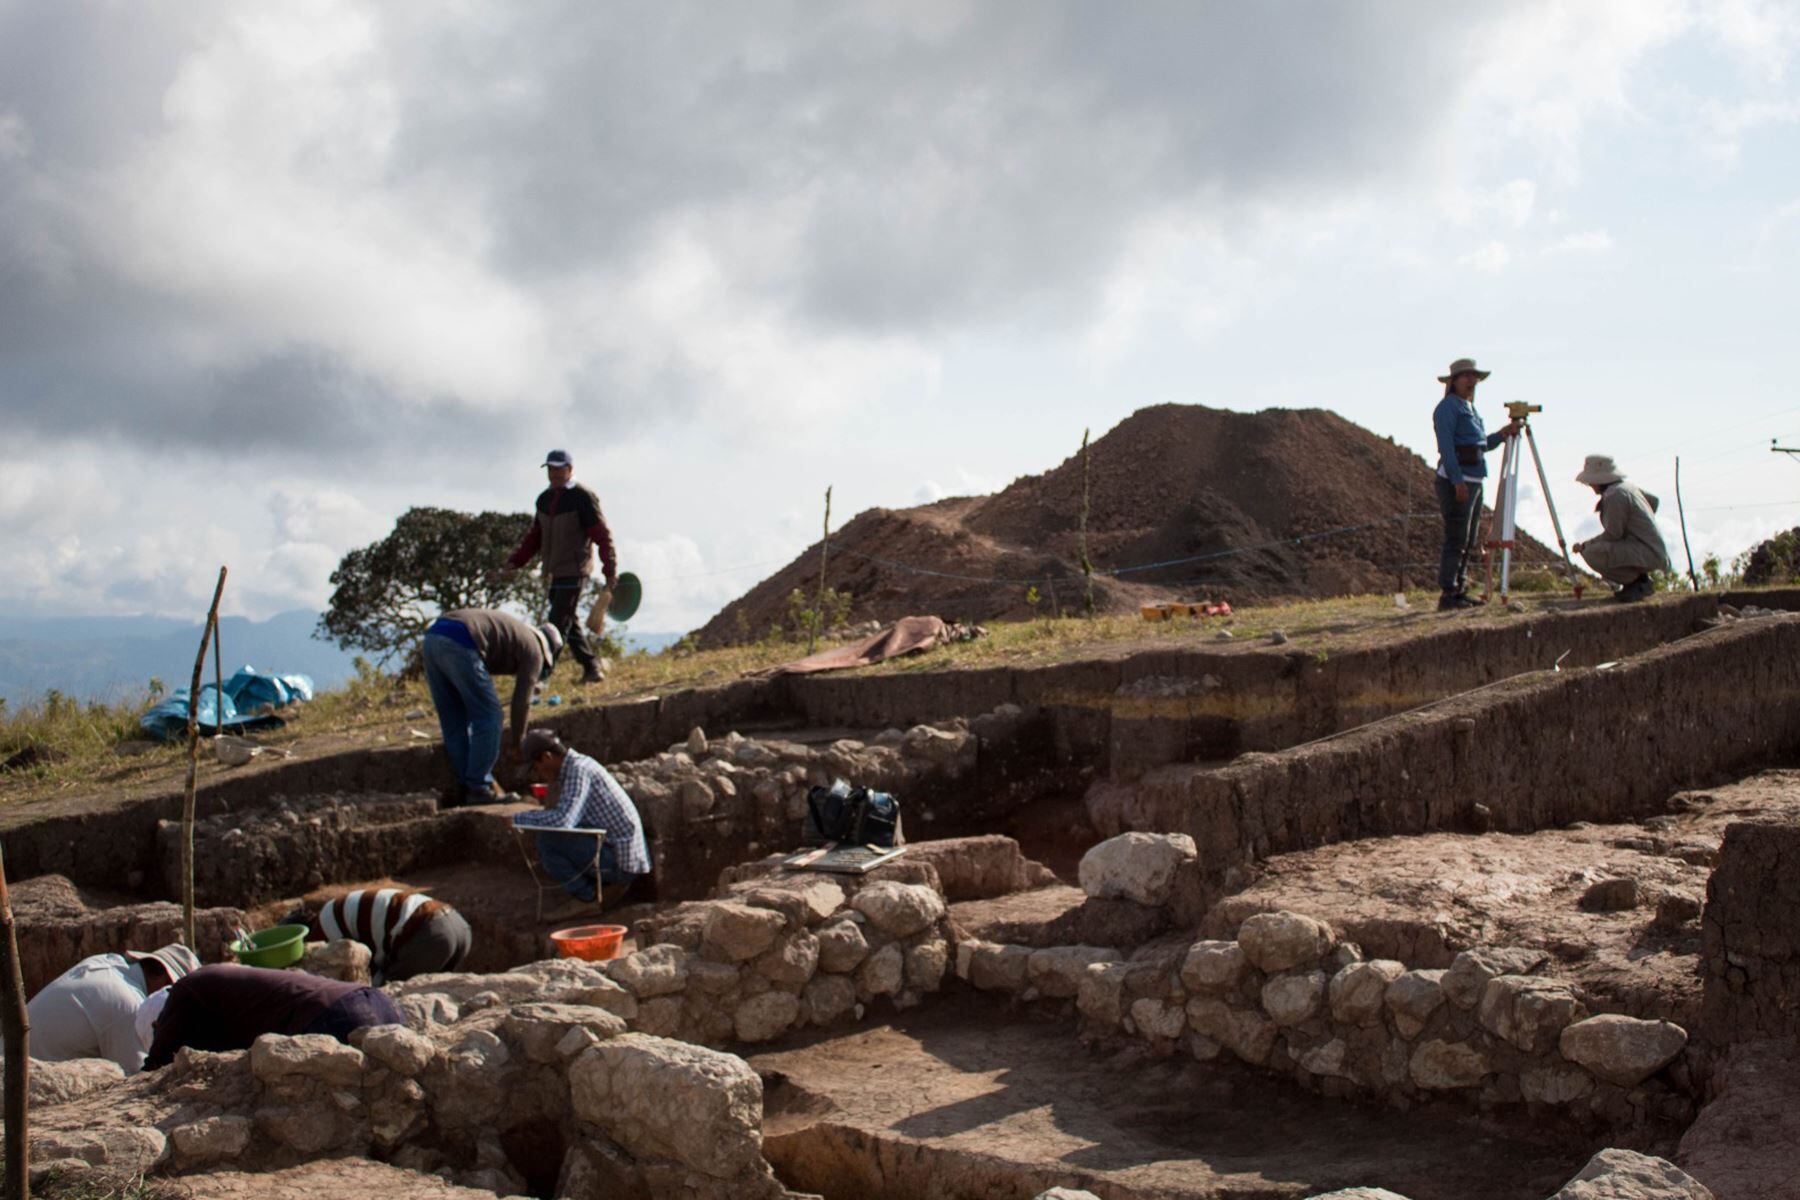 El complejo Pacopampa tiene una larga historia de ocupación humana, que se remota a más de 3,000 años y se inicia con la construcción del templo de Pacopampa hacia el año 1200 a.C - Cajamarca - Perú - Crédito: Agencia Andina.